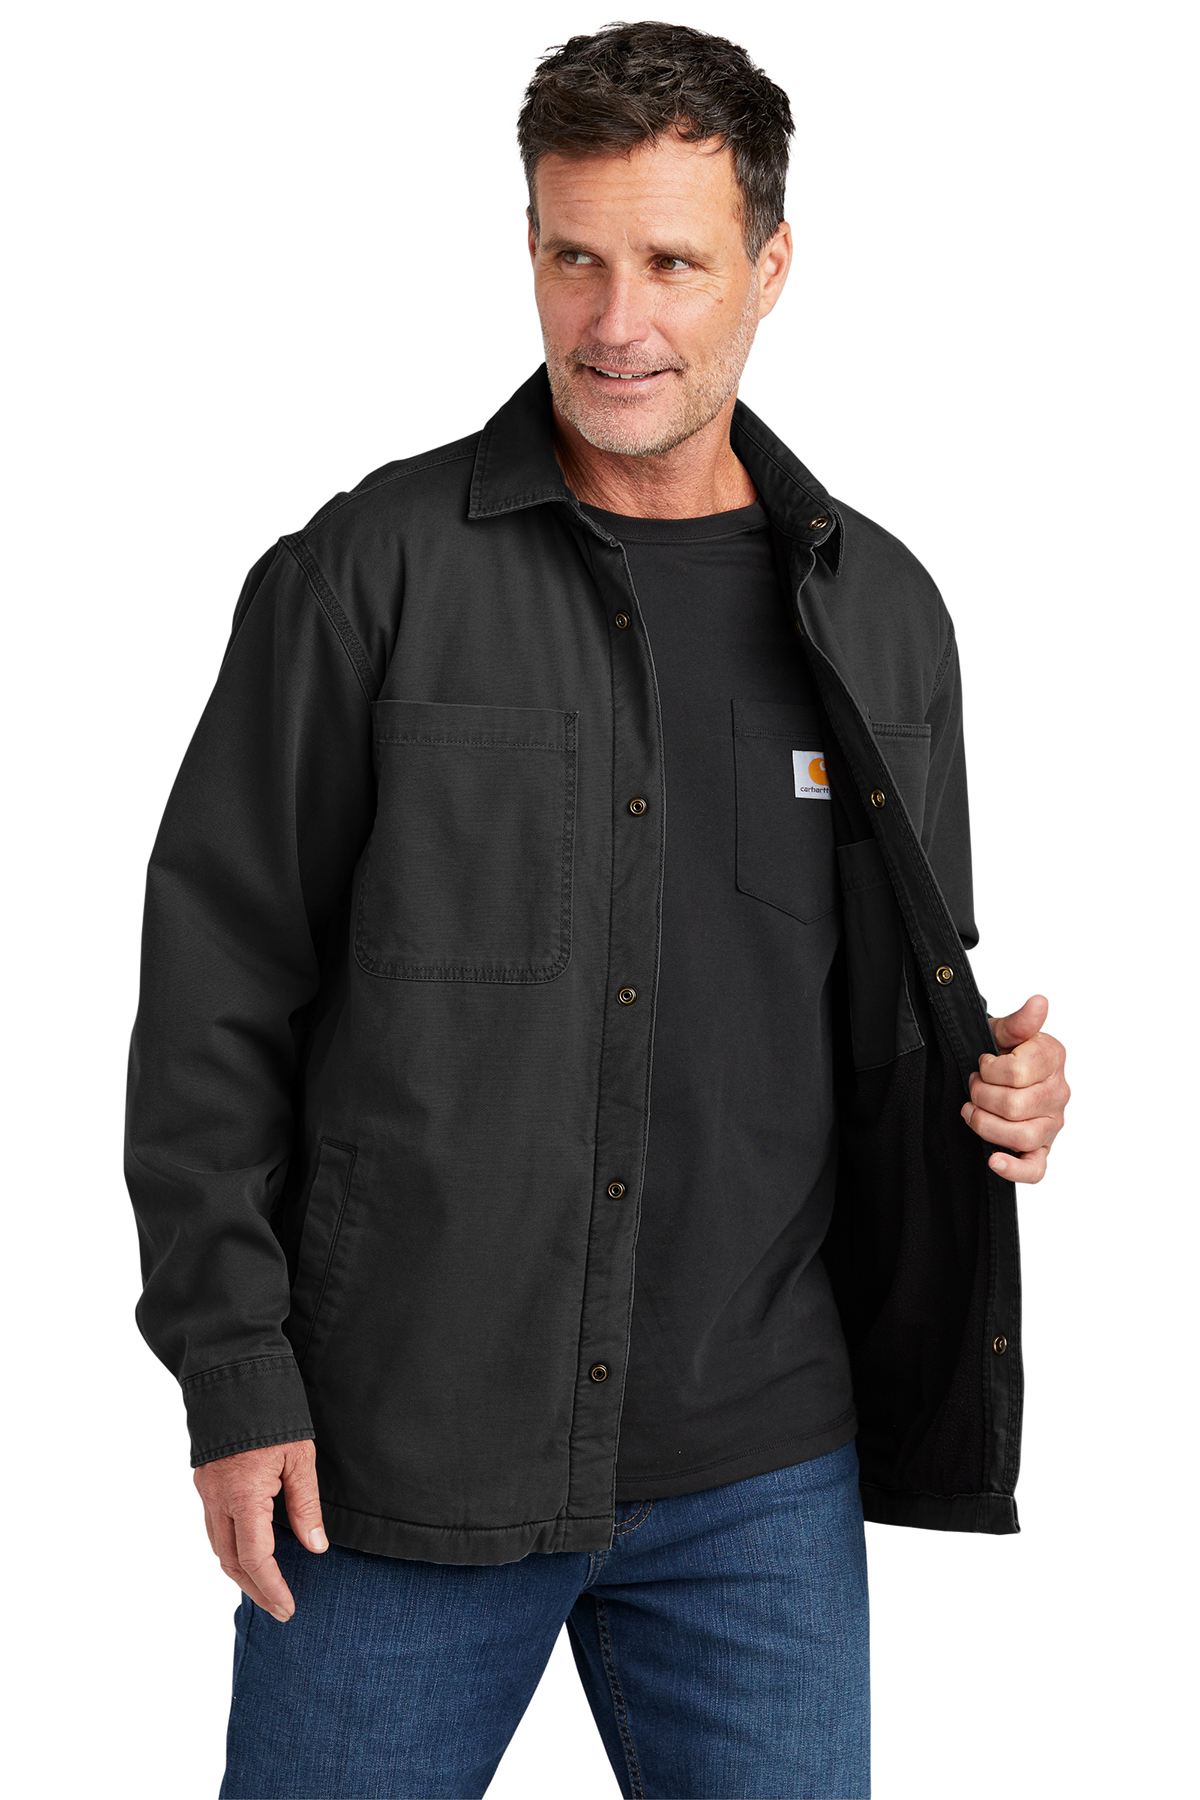 Carhartt Rugged Flex Fleece-Lined Shirt Jac | Product | Online Apparel ...